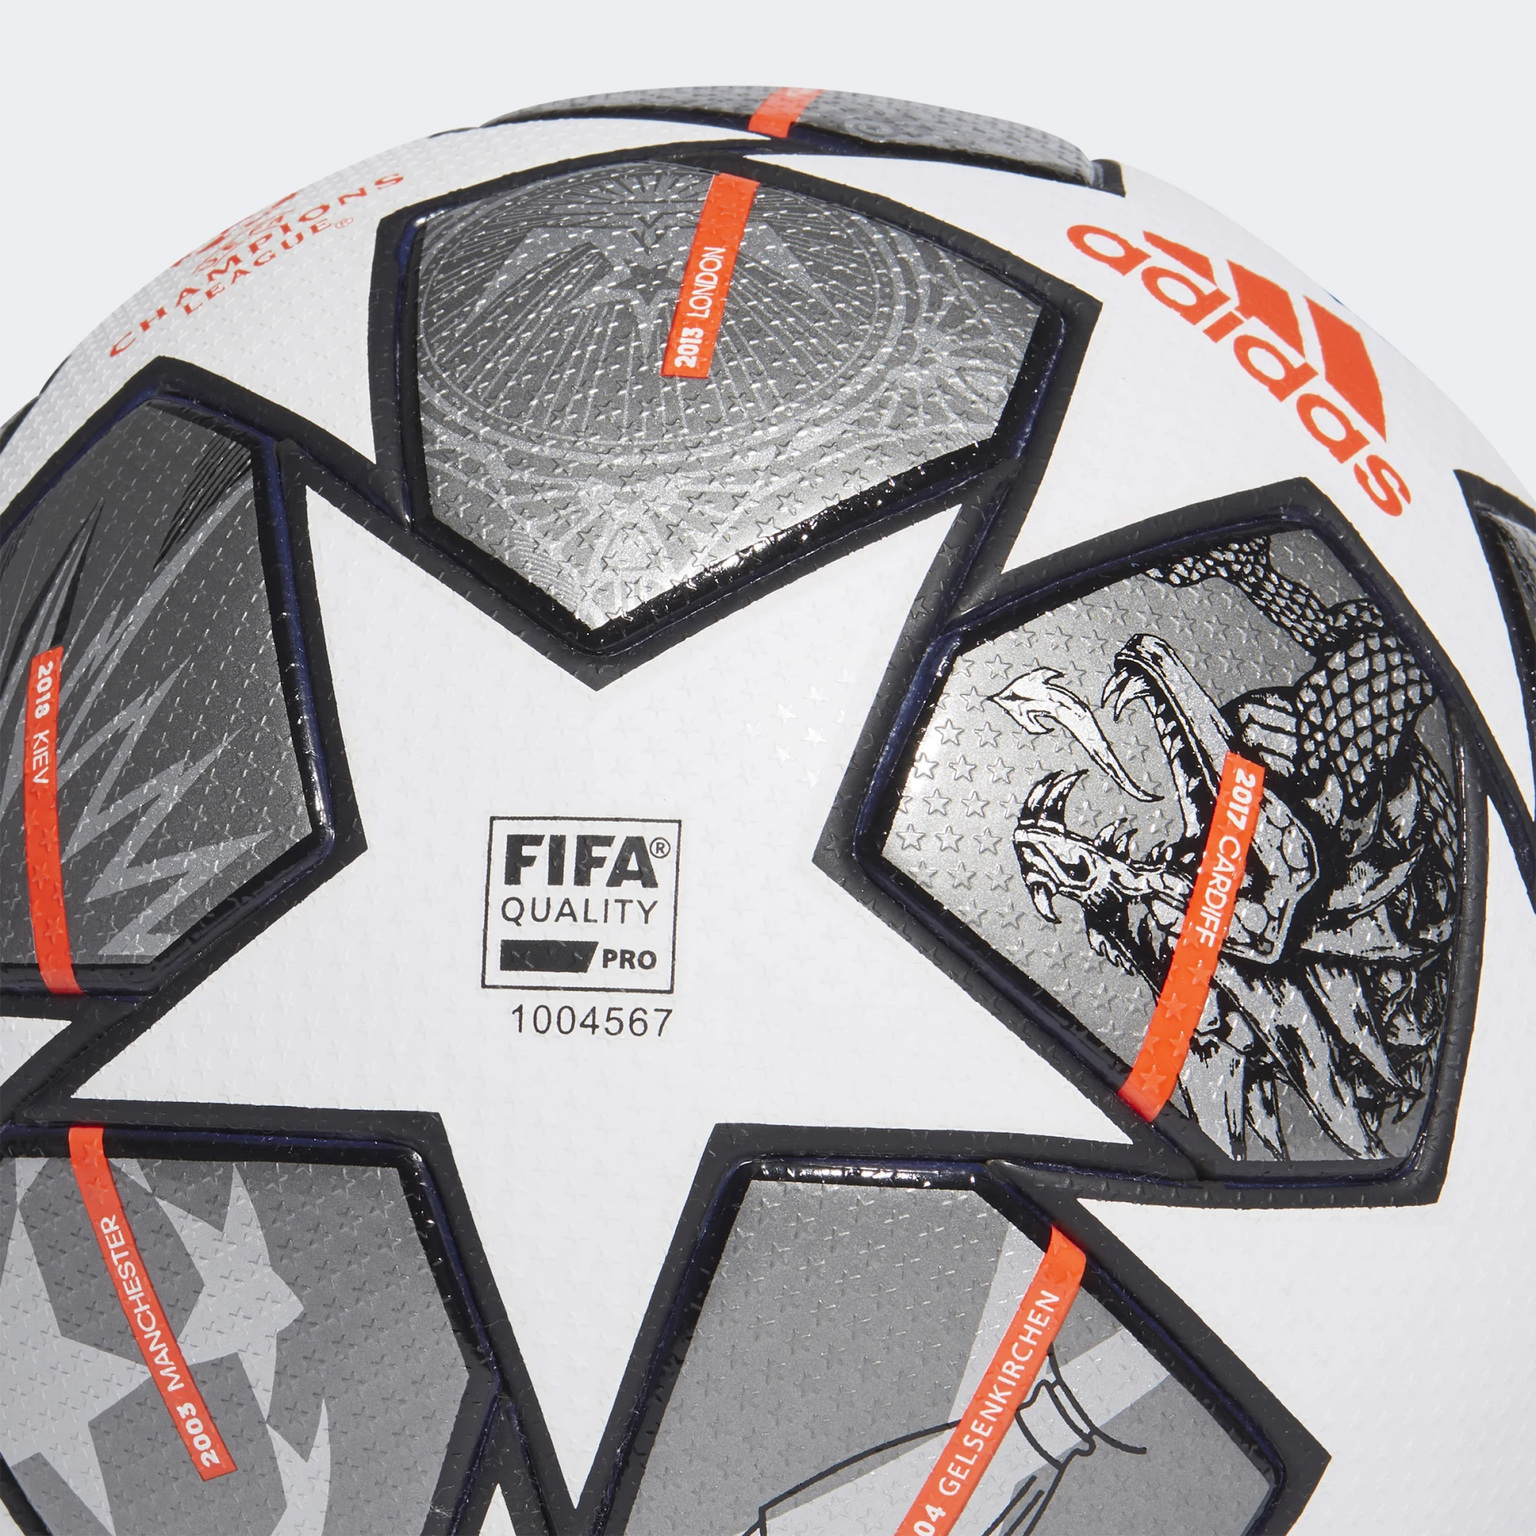 Официальный футбольный мяч Adidas Финал Лиги Чемпионов GK3477